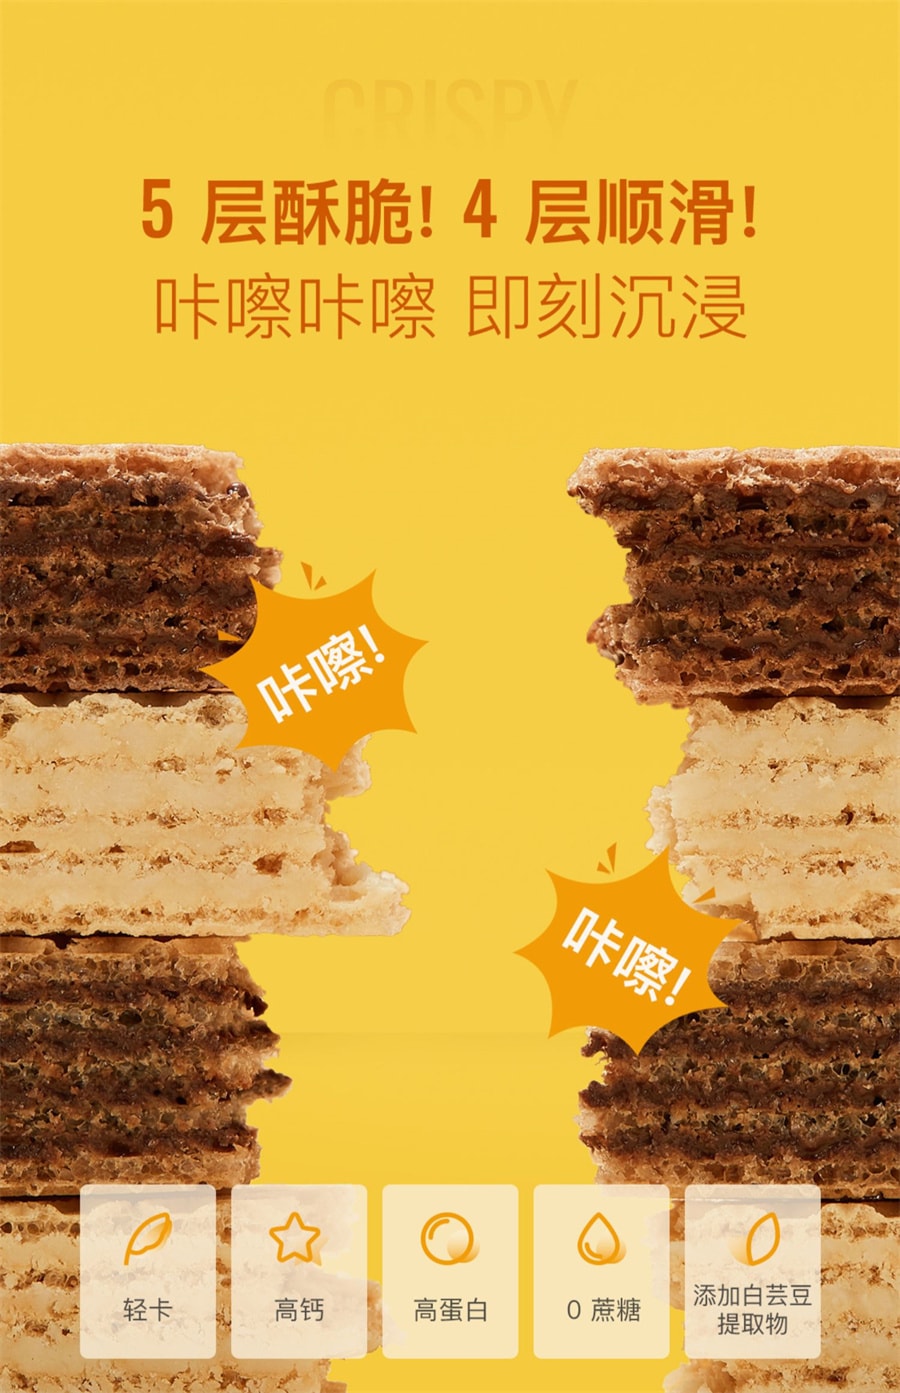 【中国直邮】Keep  高蛋白威化棒无蔗糖夹心饼干健康零食小吃休闲食品办公室解馋  黑巧味156g/盒